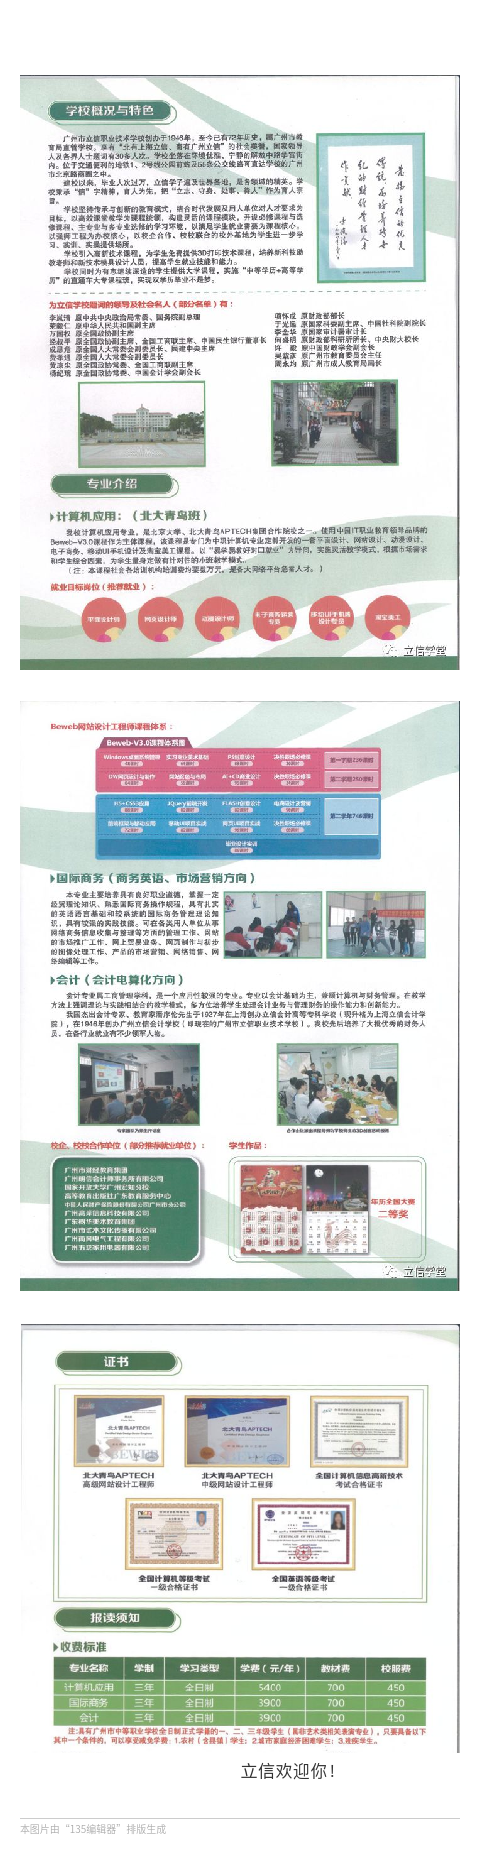 广州市立信职业技术学校2018学年招生简章